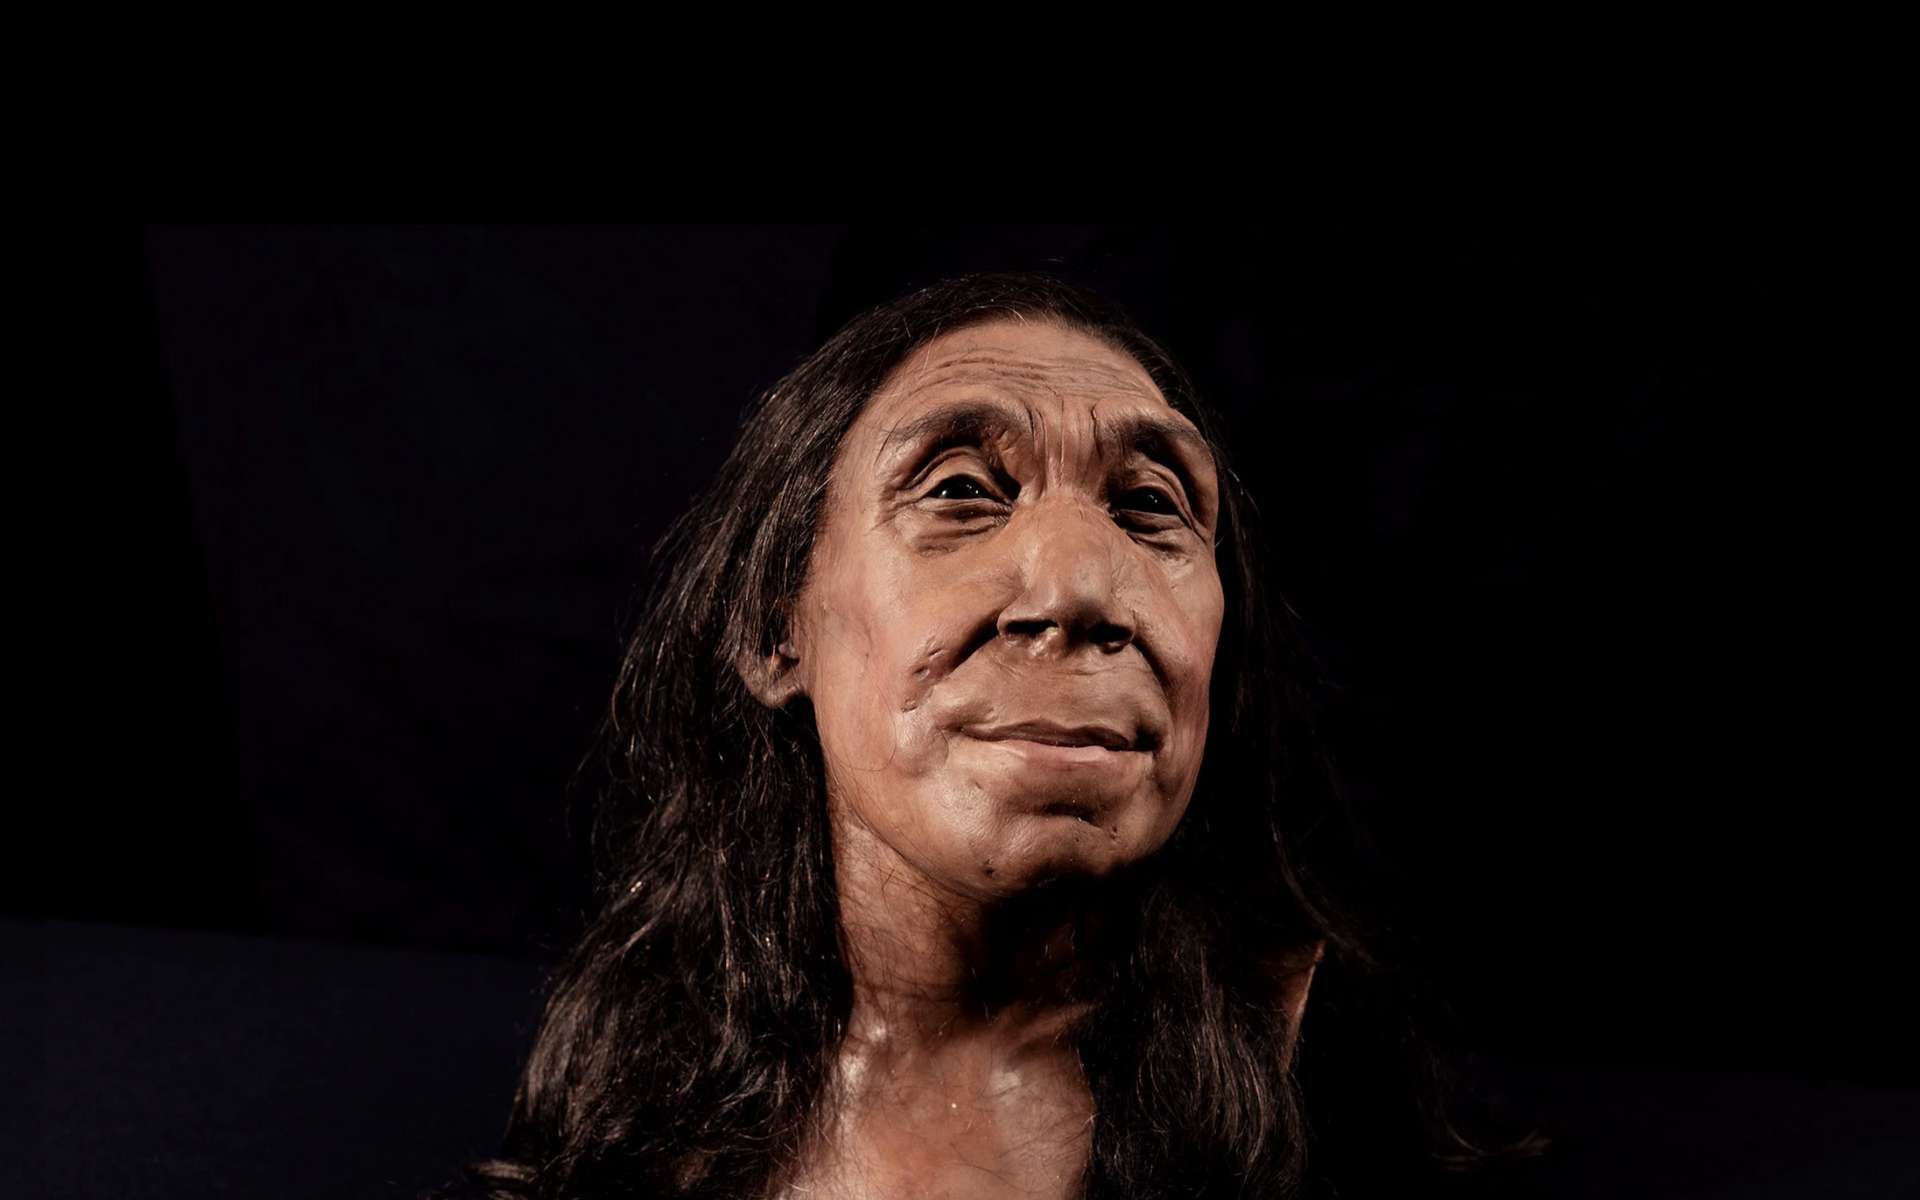 Impressionnante reconstitution du visage d'une femme Neandertal qui a vécu il y a 75 000 ans